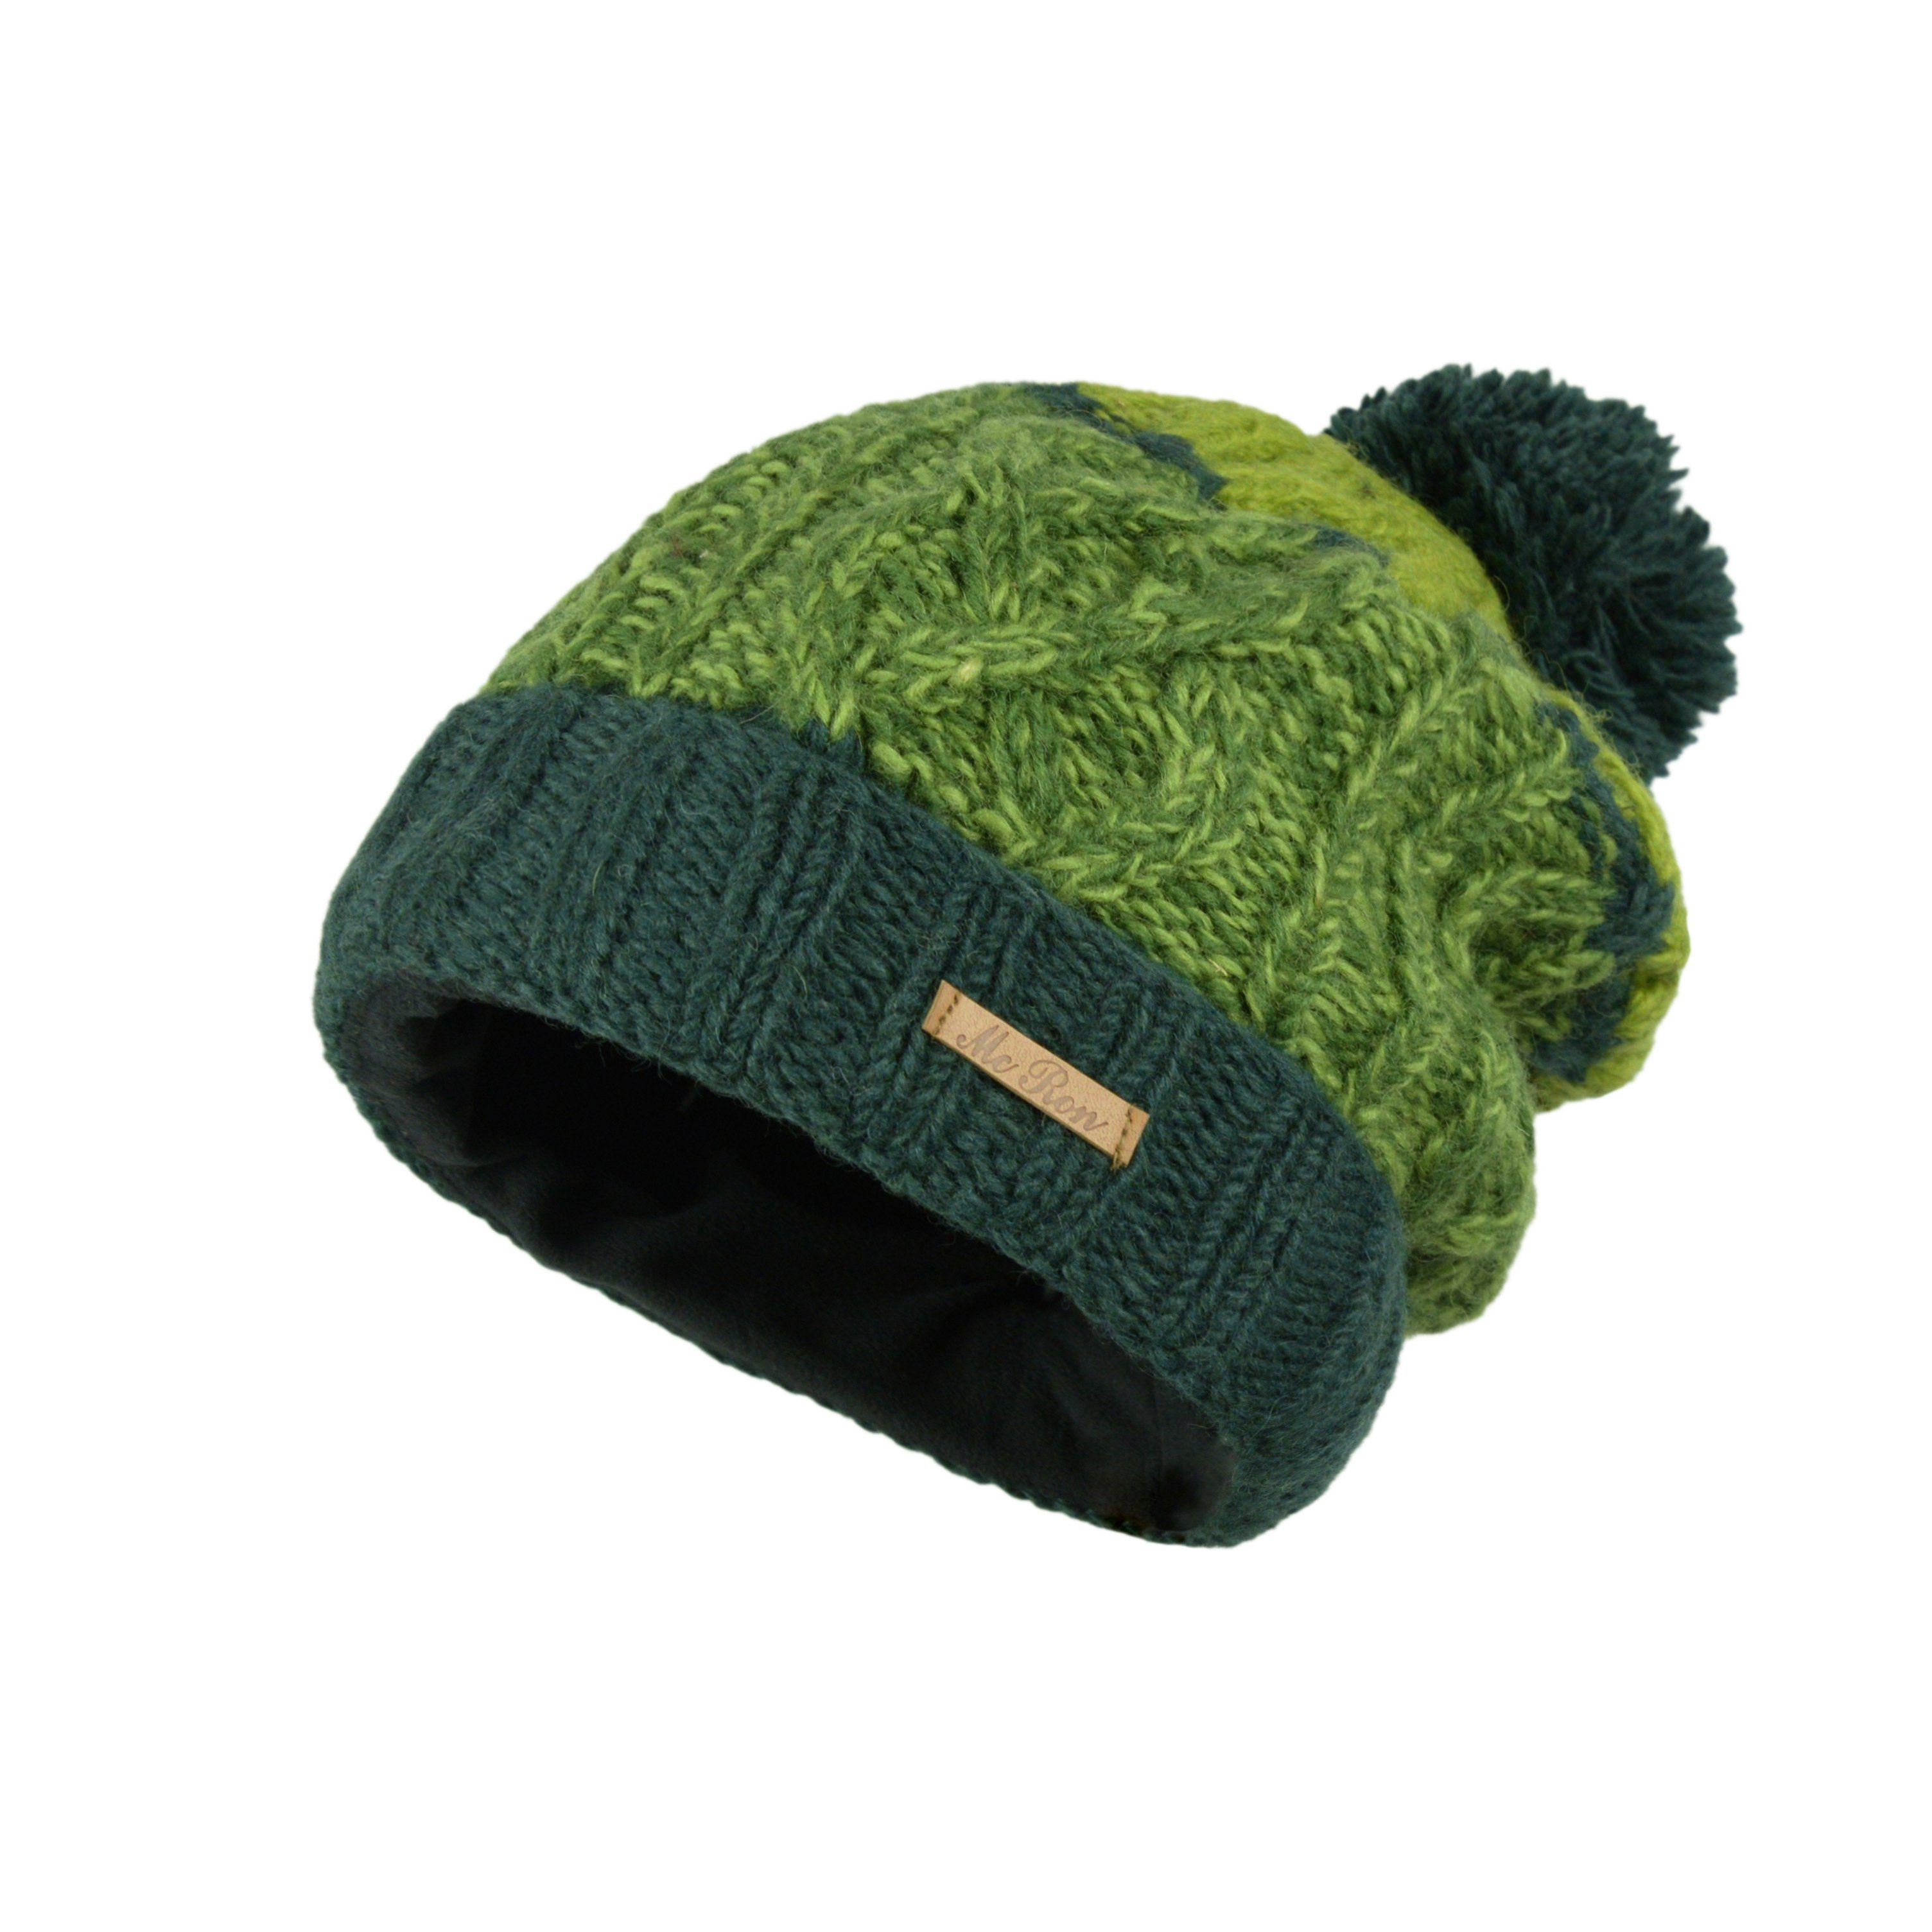 McRon Strickmütze Farbenfrohe Wollmütze mit Bommel Modell Tavis mit Umschlag Grün